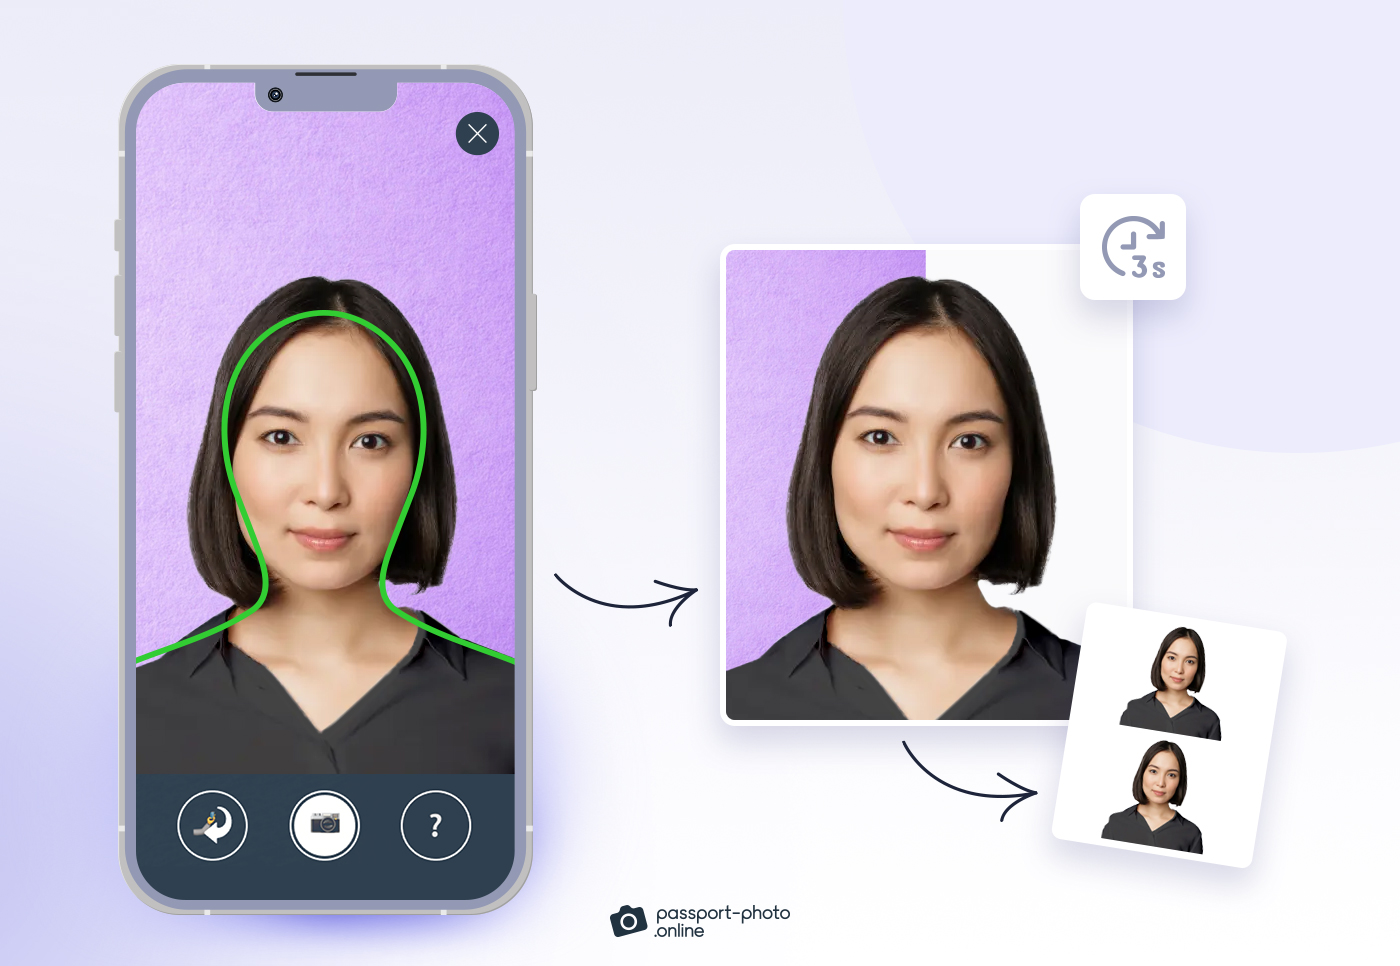 Una imagen es transformada en una foto para pasaporte con garantía de validez en tan solo 3 segundos usando la app móvil de Passport Photo Online.